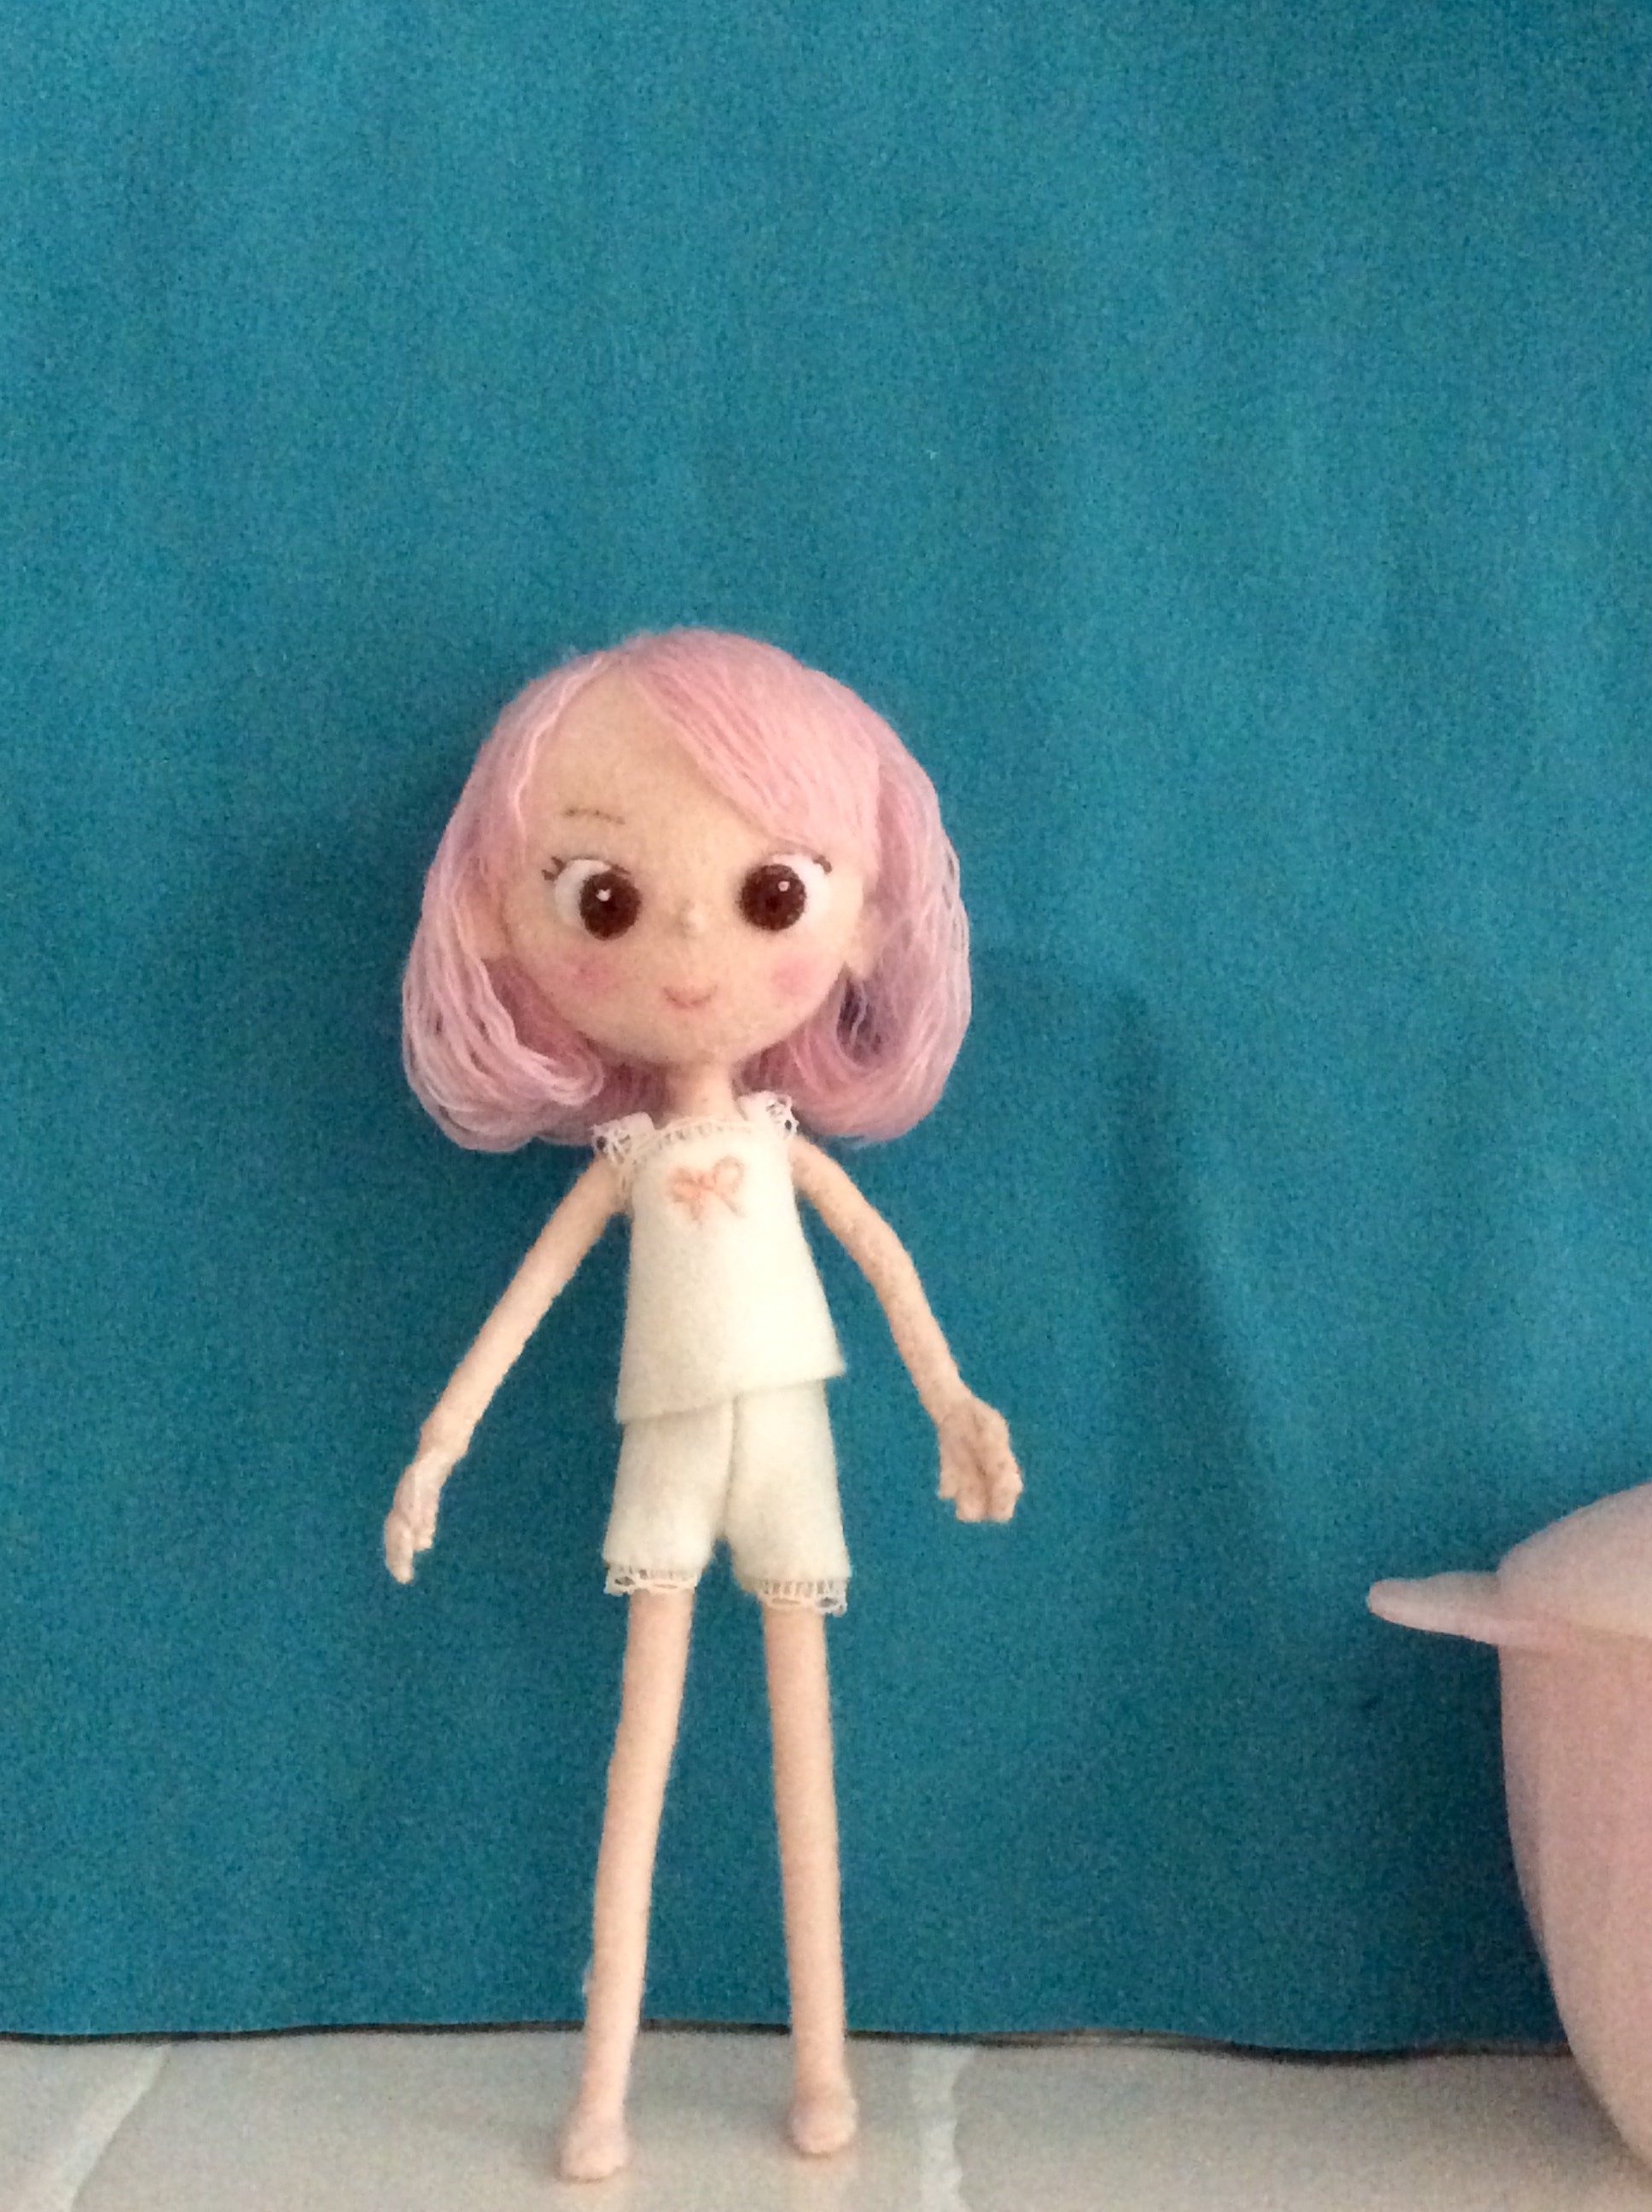 昭和レトロを作ろう 今度の人形 6号 はピンクの髪